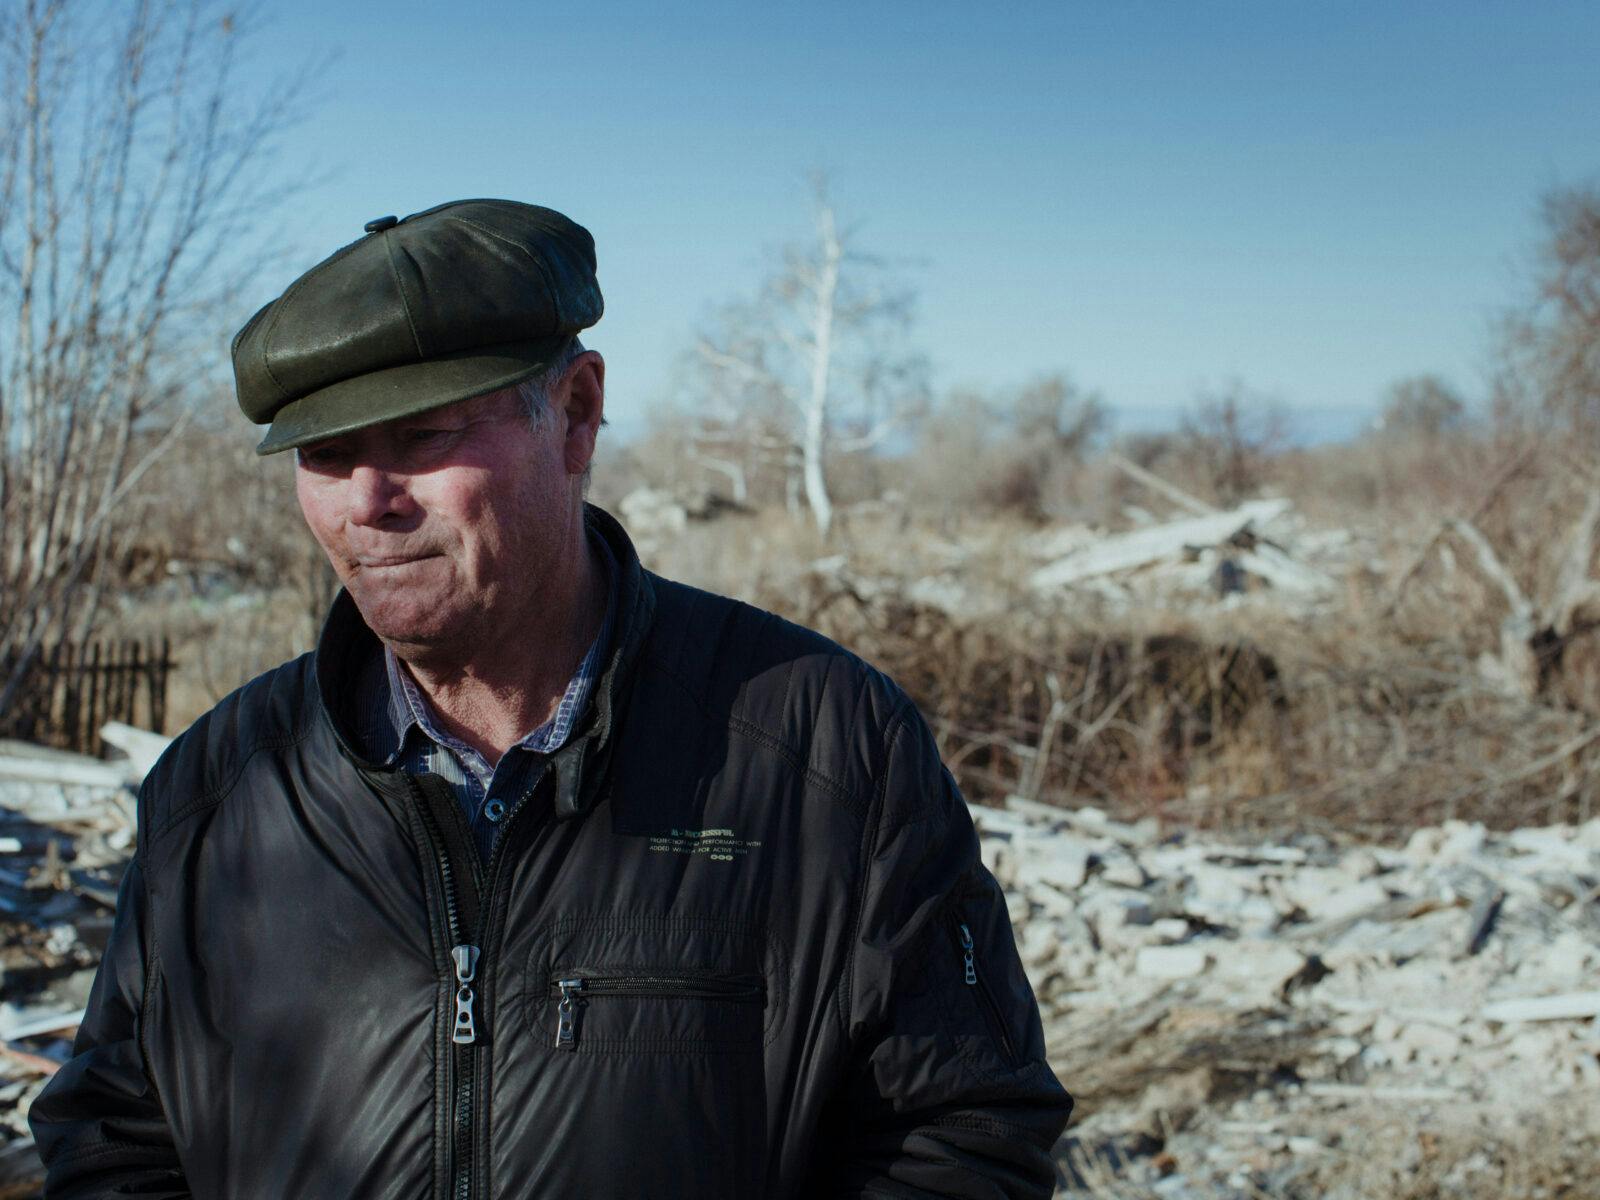 När gasfältet upptäcktes 1979 var Berezovkabon Pavel Ivanov, 75, först stolt. På den tiden anade ännu ingen i byn vilken påverkan gasfyndigheten skulle få på liv och hälsa. Här står han på ruinerna av sitt tidigare hus i byn Berezovka.